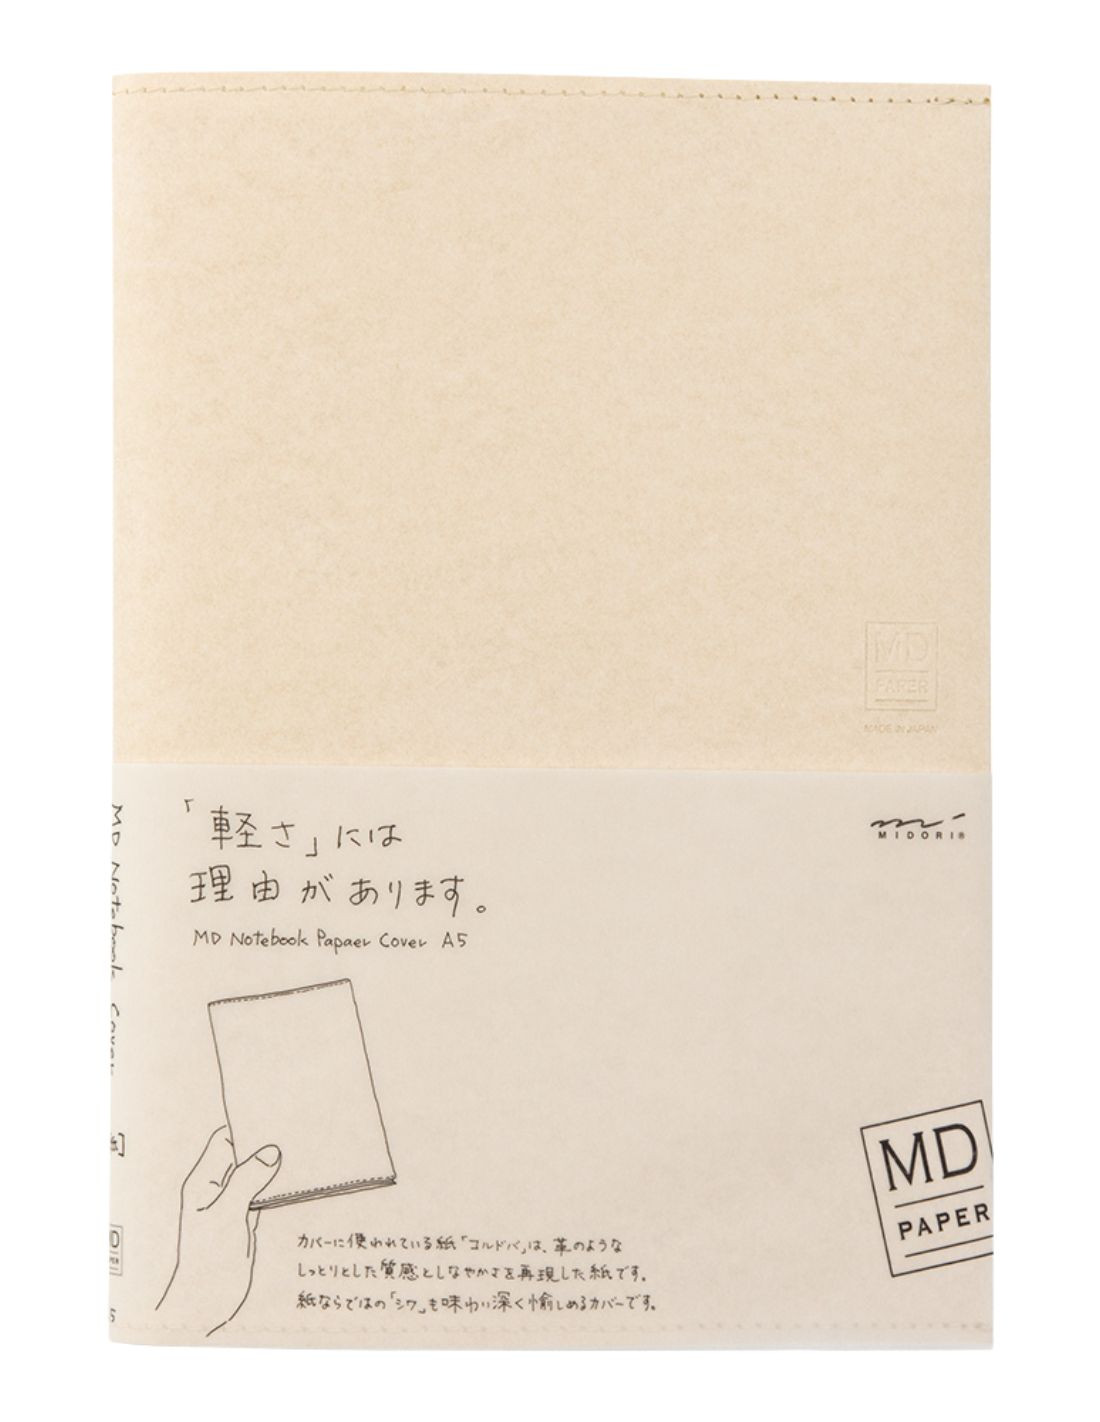 MD Paper Notebook Cover - A5 - Paper - Midori